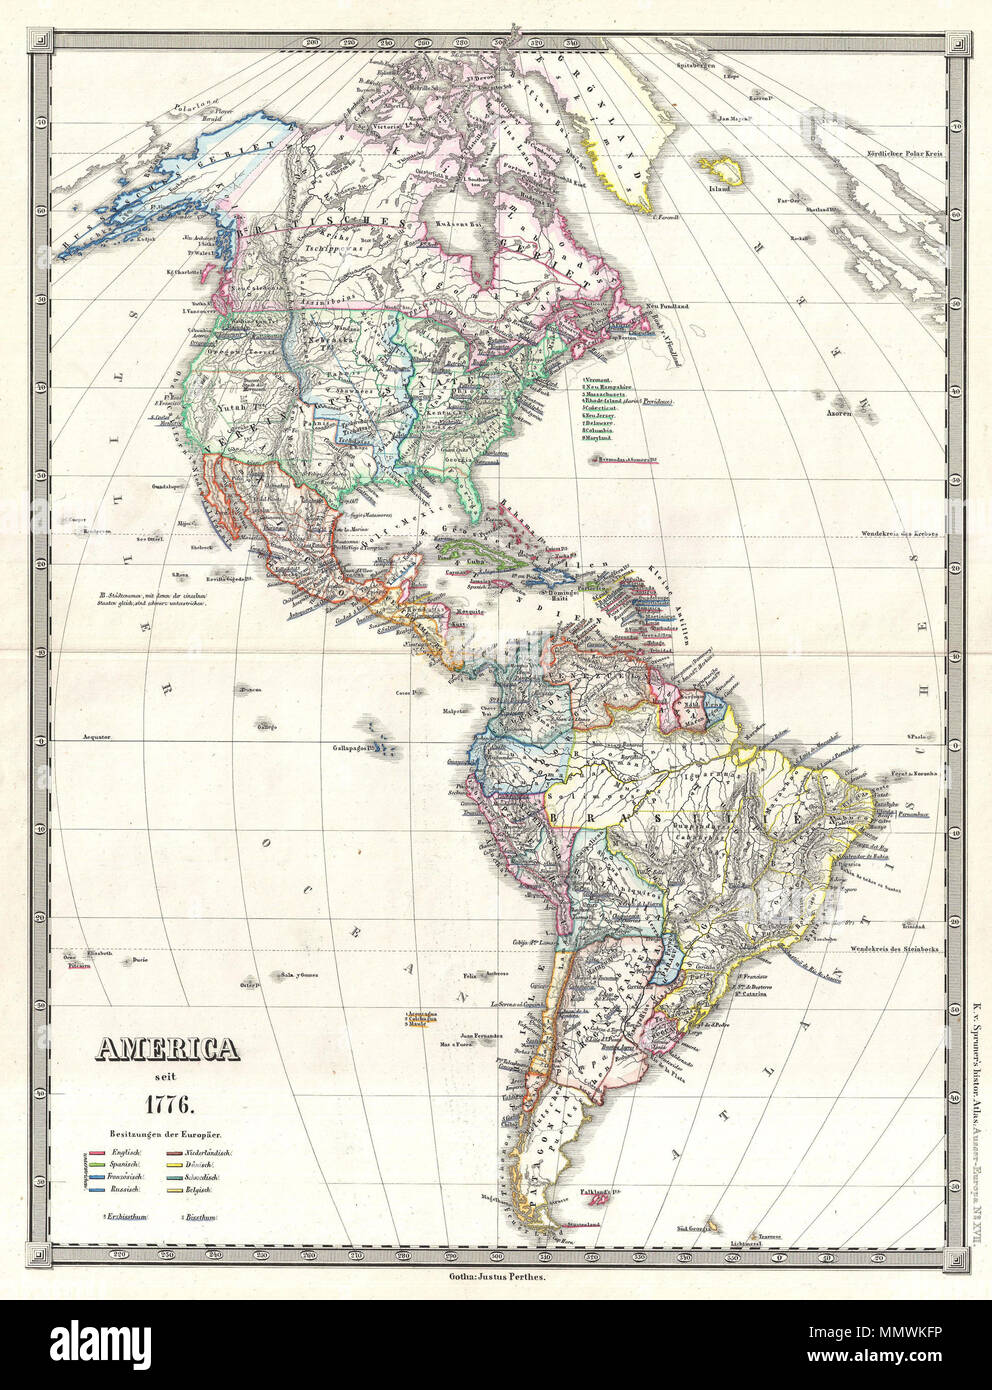 Inglés: Esto es Karl von Spruner 1855 Mapa de América del Norte y del Sur  "desde 1776", incluida Groenlandia al norte, Tierra del Fuego e islas  Malvinas, hacia el sur, y